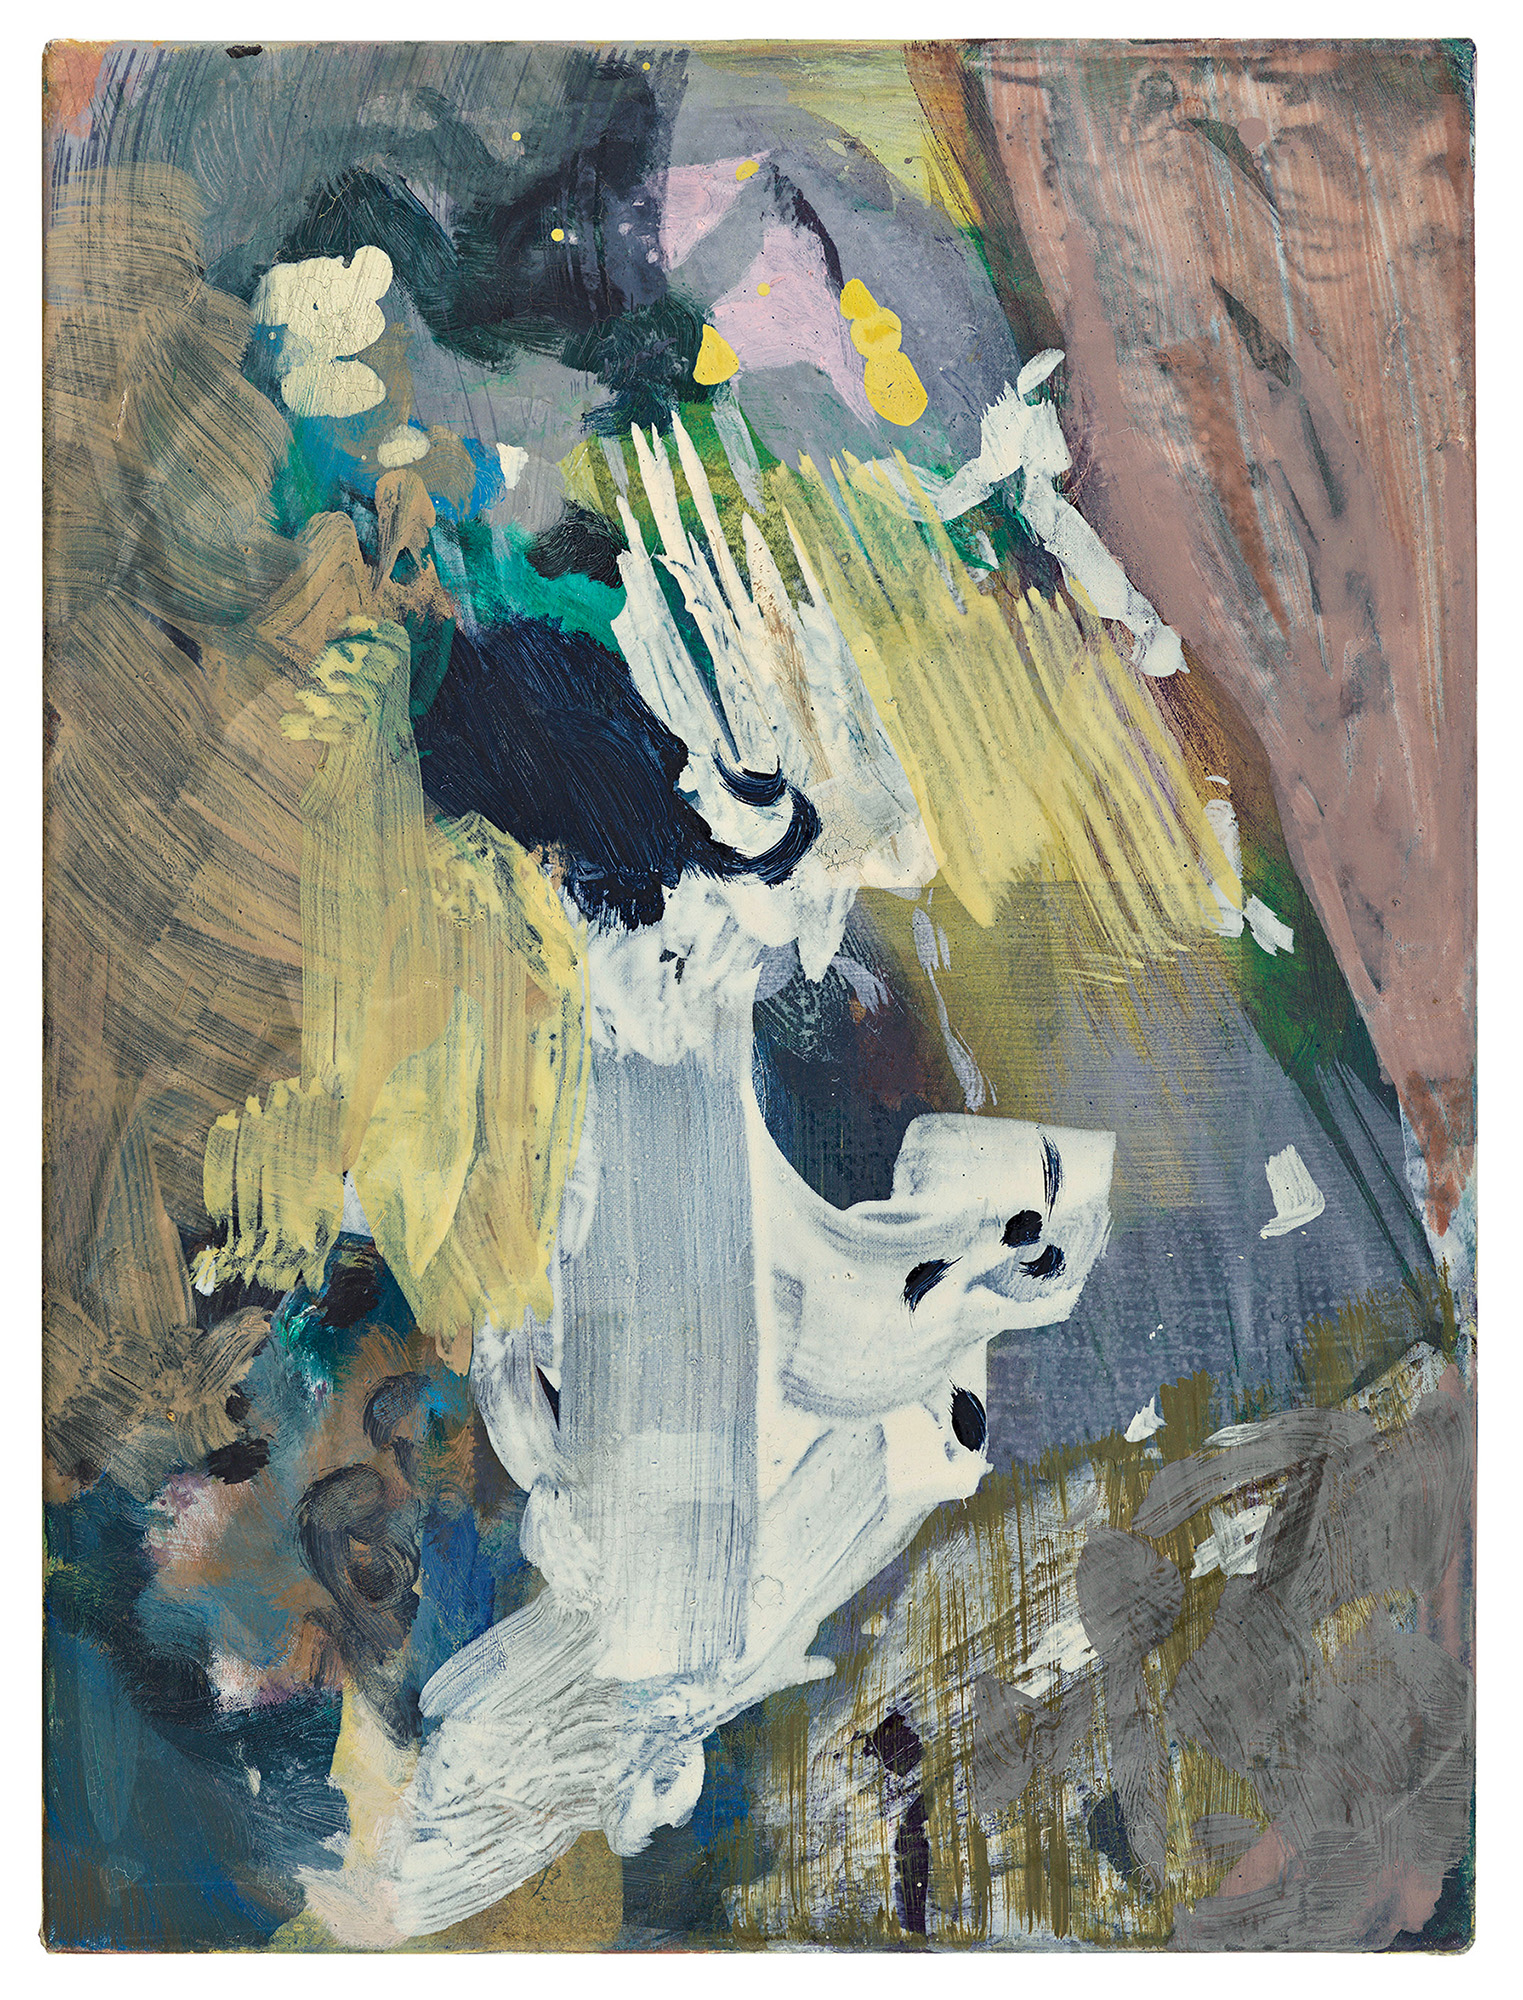 Maki Na Kamura, LD LXXXI, 2021, oil, egg tempera on canvas, 60,5 x 45 cm